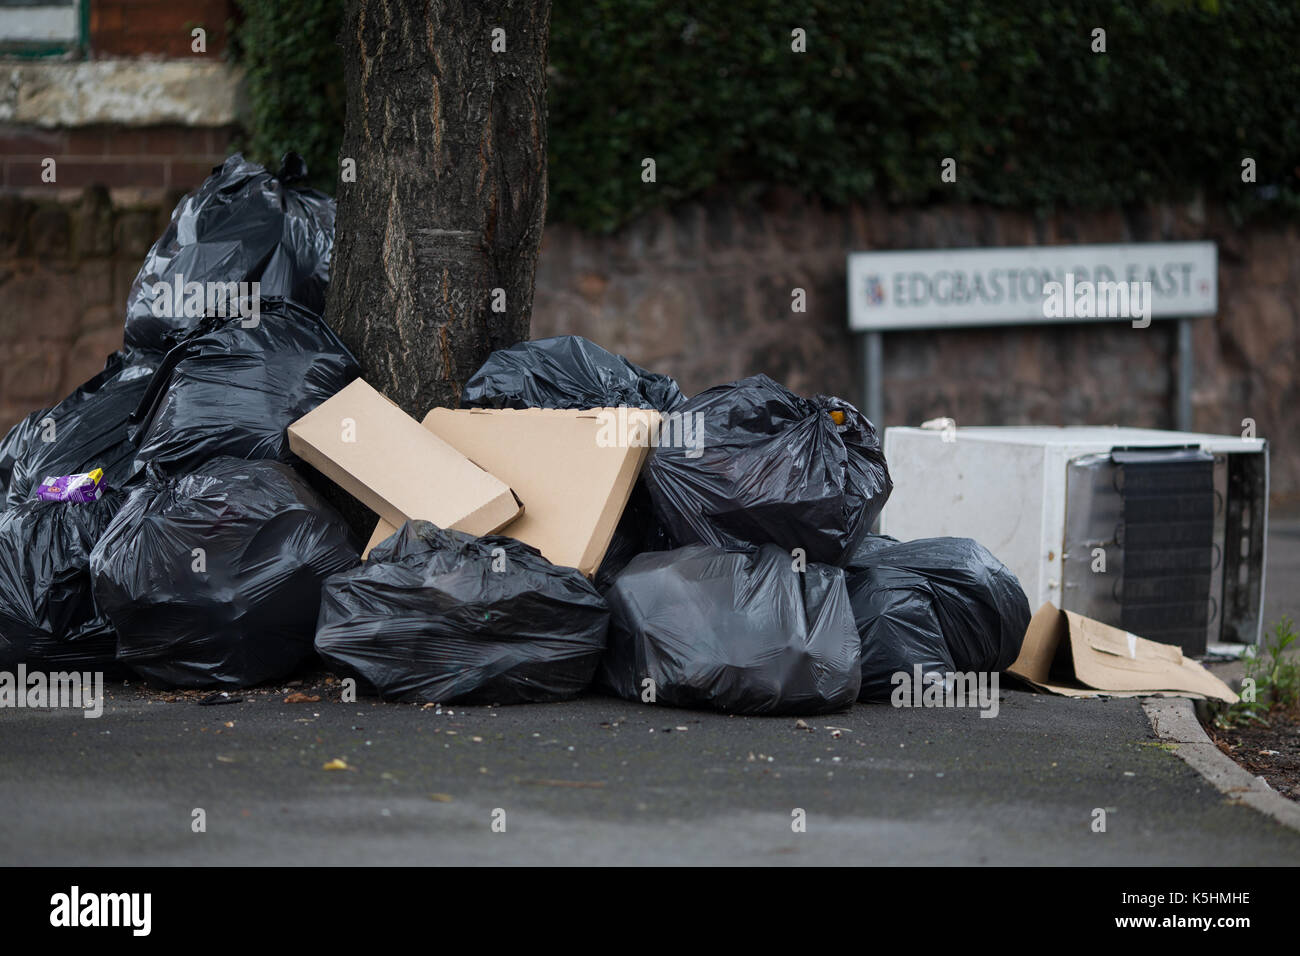 Des sacs poubelle entassés à côté d'un arbre en edgebaston Road East, Birmingham, que l'actuel conflit entre Birmingham City Council et le personnel de collecte des déchets se poursuit. Banque D'Images